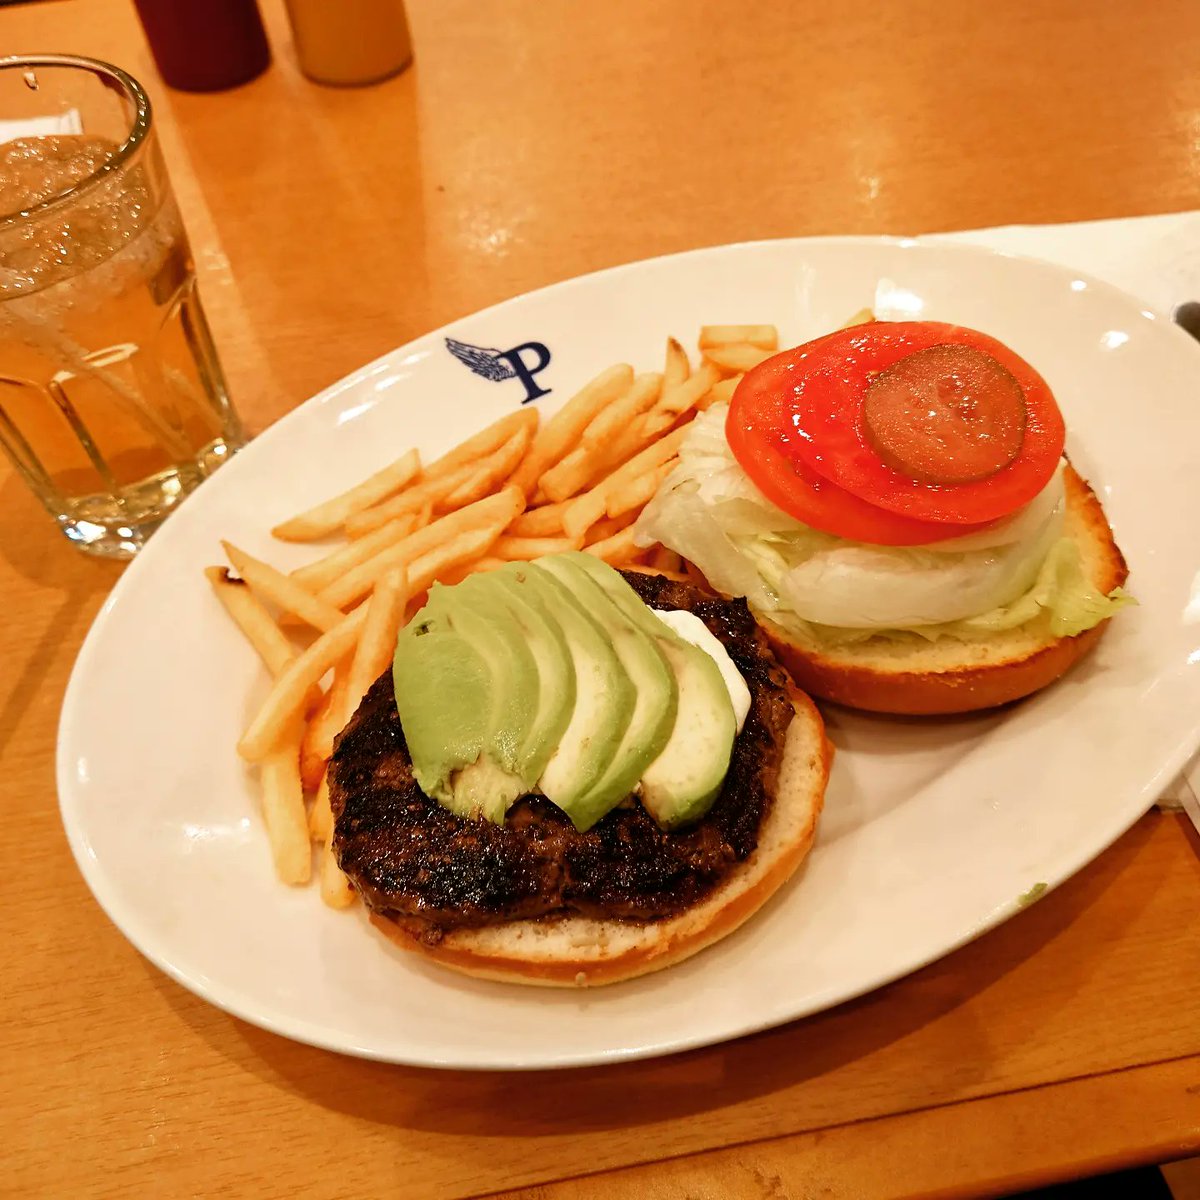 #hamburger 
昨日の仕事終わりのランチ🍔😋💕
美味しかったけど、この手のハンバーガーって何でオリジナルソースじゃなくて、セルフのケチャップ&マスタードなんだろう🤔 テリヤキバーガー以外はみんなケチャップ味になるよね🤣
#thepantry
Instagram.com/maronmei